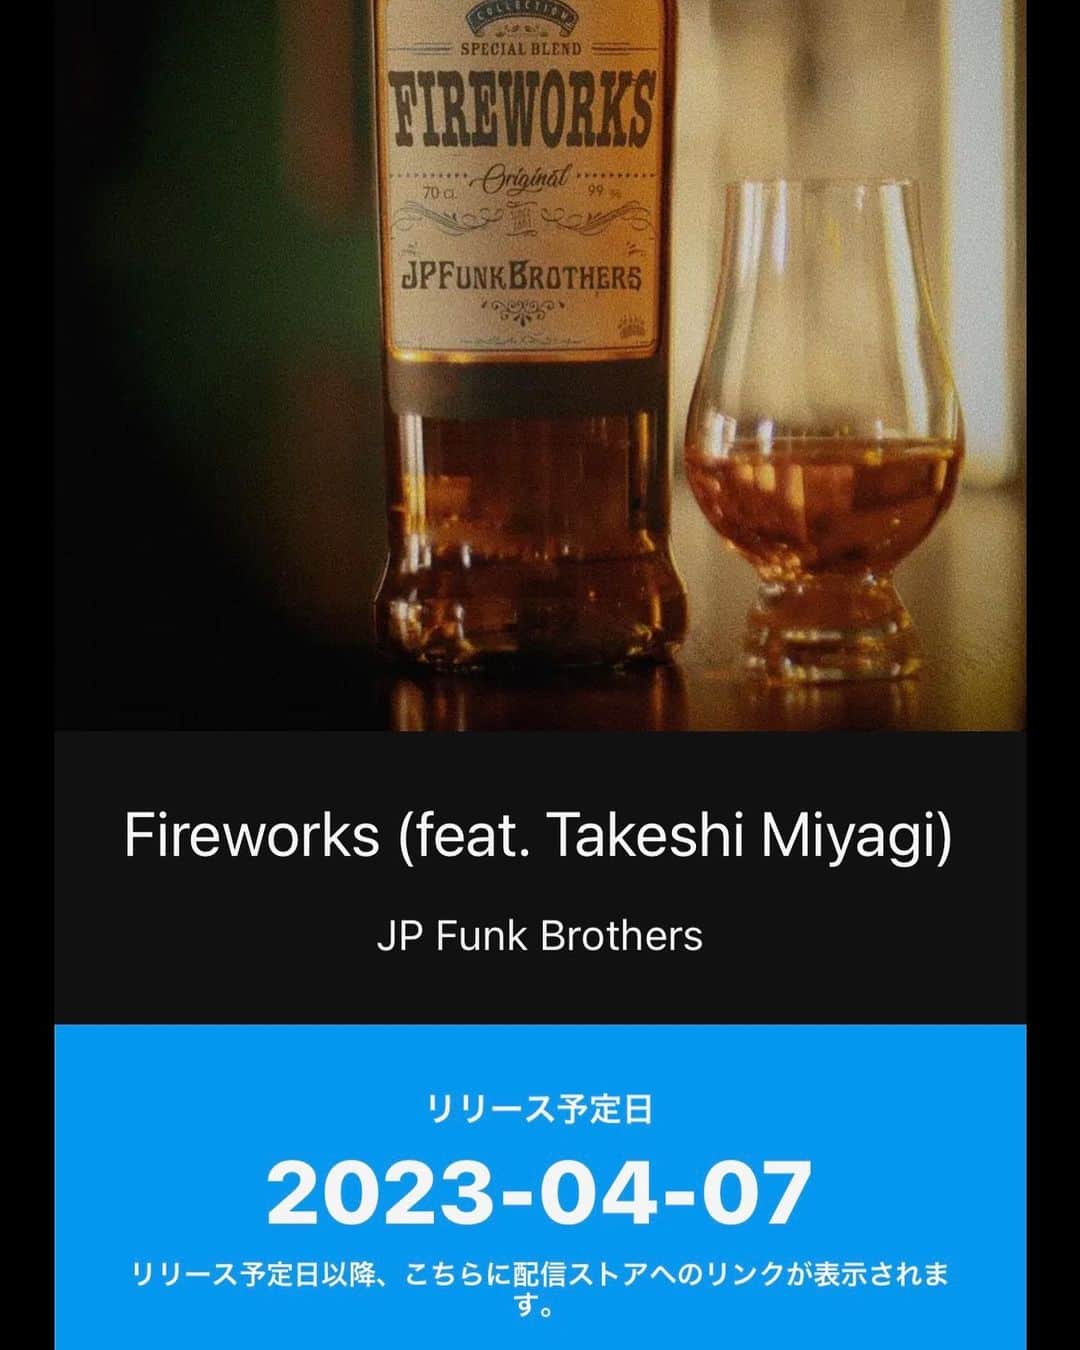 石川よしひろのインスタグラム：「【リリース情報】 Fireworks feat. Takeshi Miyagi / JP Funk Brothers  4/7 たまプラーザ発ファンク・バンドJP Funk Family  のアニキユニットJP Funk Brothersが遂にベールを脱ぐ！石川よしひろが書き下ろし、Minminがペンをとった「Fireworks feat. Takeshi Miyagi」が全世界同時配信リリース。Soul Man Takeshi Miyagiを迎え、ご機嫌なFunk Tuneを披露！石川よしひろ,Harumi,KaY,Minmin,Ayumi & Yutaka Horiもコーラスで友情参加！ギター高井城治、ベース斉藤昌人も参加して楽曲をさらに盛り上げてくれている。  https://linkco.re/PMrPrtMm?lang=ja  アーティスト名：JP Funk Brothers タイトル：Fireworks feat. Takeshi Miyagi  型番：RBFD-2321(配信) リリース：2023/4/7 (配信) 楽曲：Fireworks feat. Takeshi Miyagi  Lyrics: Minmin  Music: Yoshihiro Ishikawa  Arrange: Tetsuji Nishigaki  #石川よしひろ #リリース情報 #配信 #ファンクバンド #よろしくお願いします」